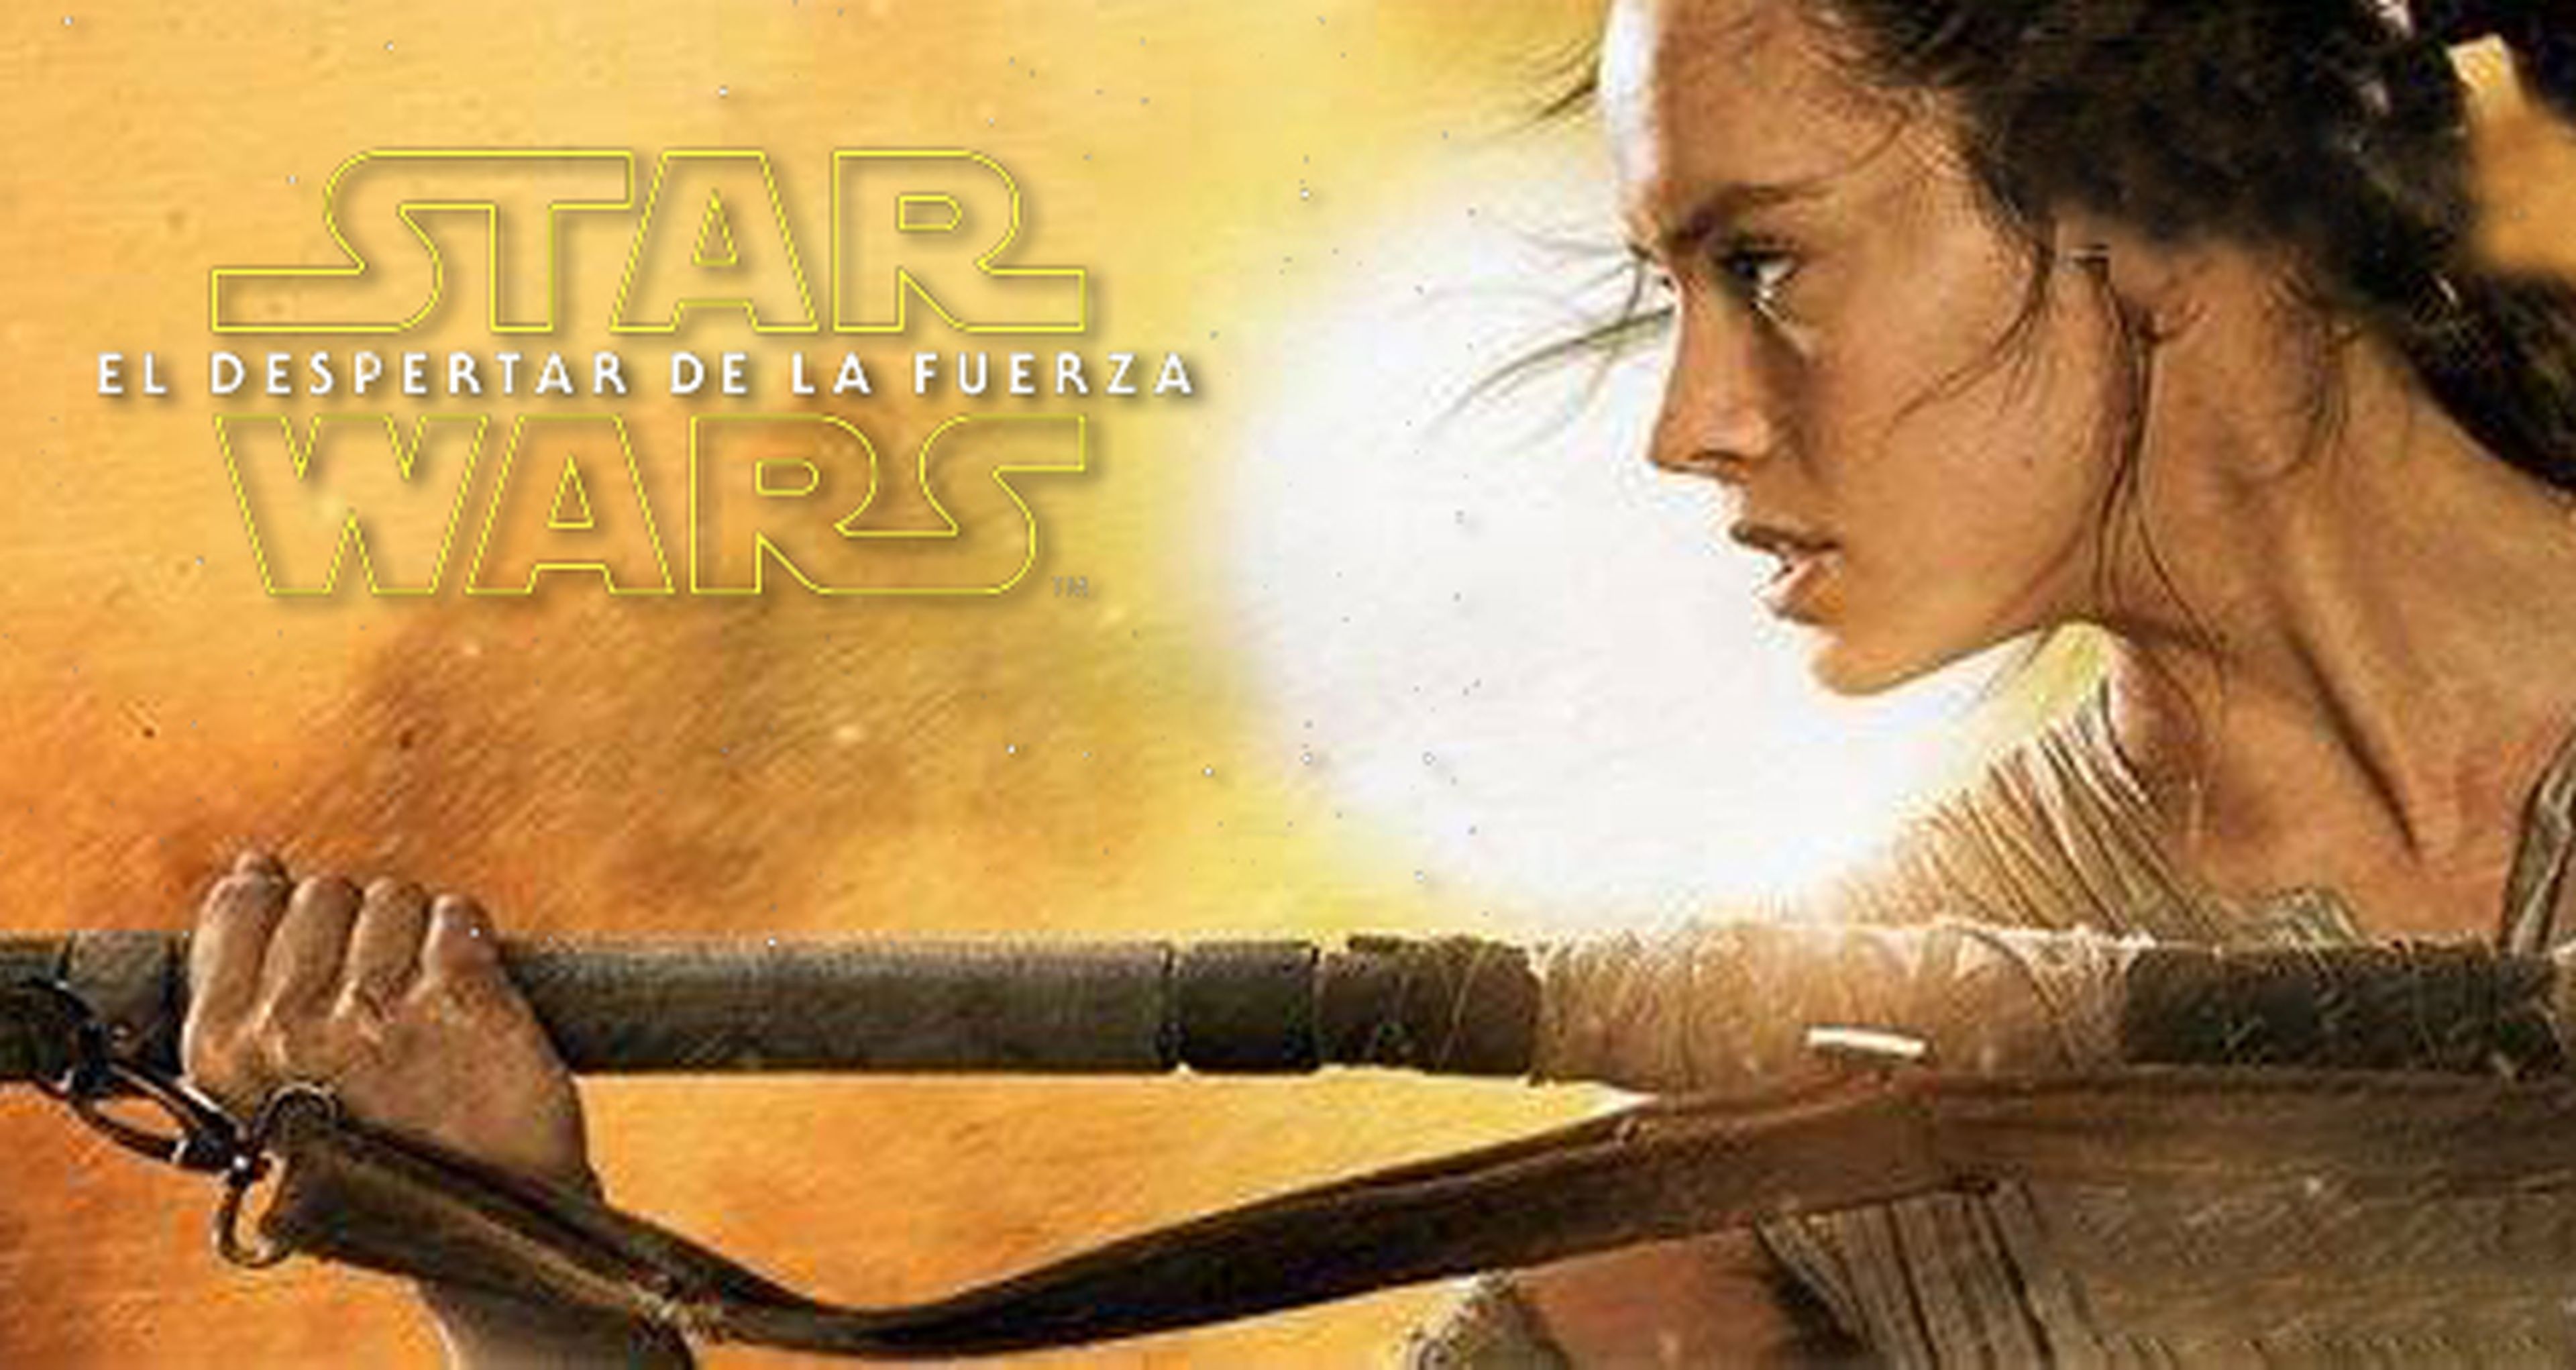 Star Wars VII El despertar de la fuerza: todos los tráiler, spot y póster